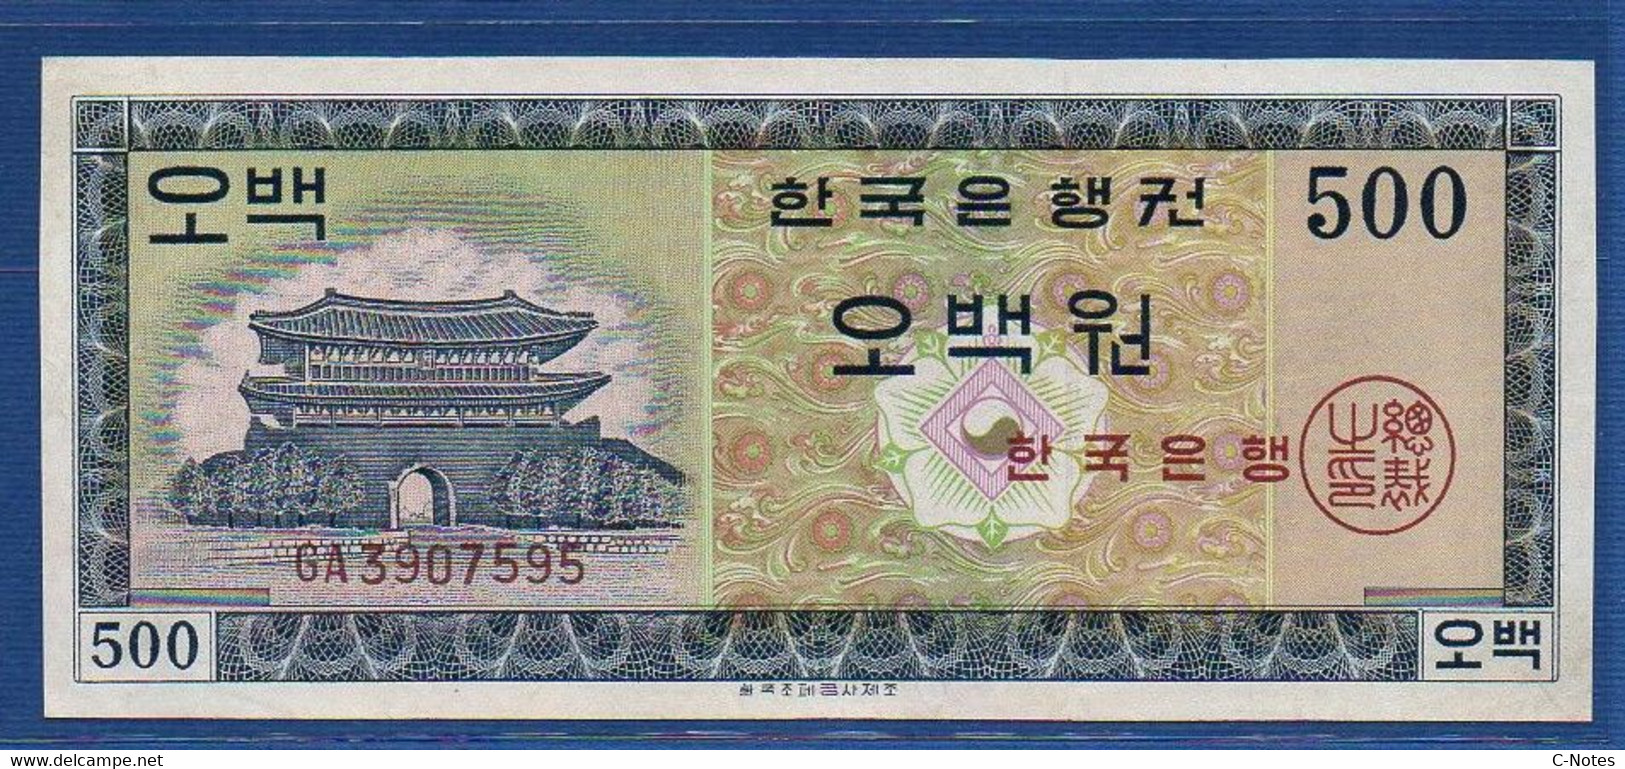 KOREA (SOUTH) - P.37 – 500 Won ND (1962) UNC, Serie GA 3907595 - Corea Del Sur